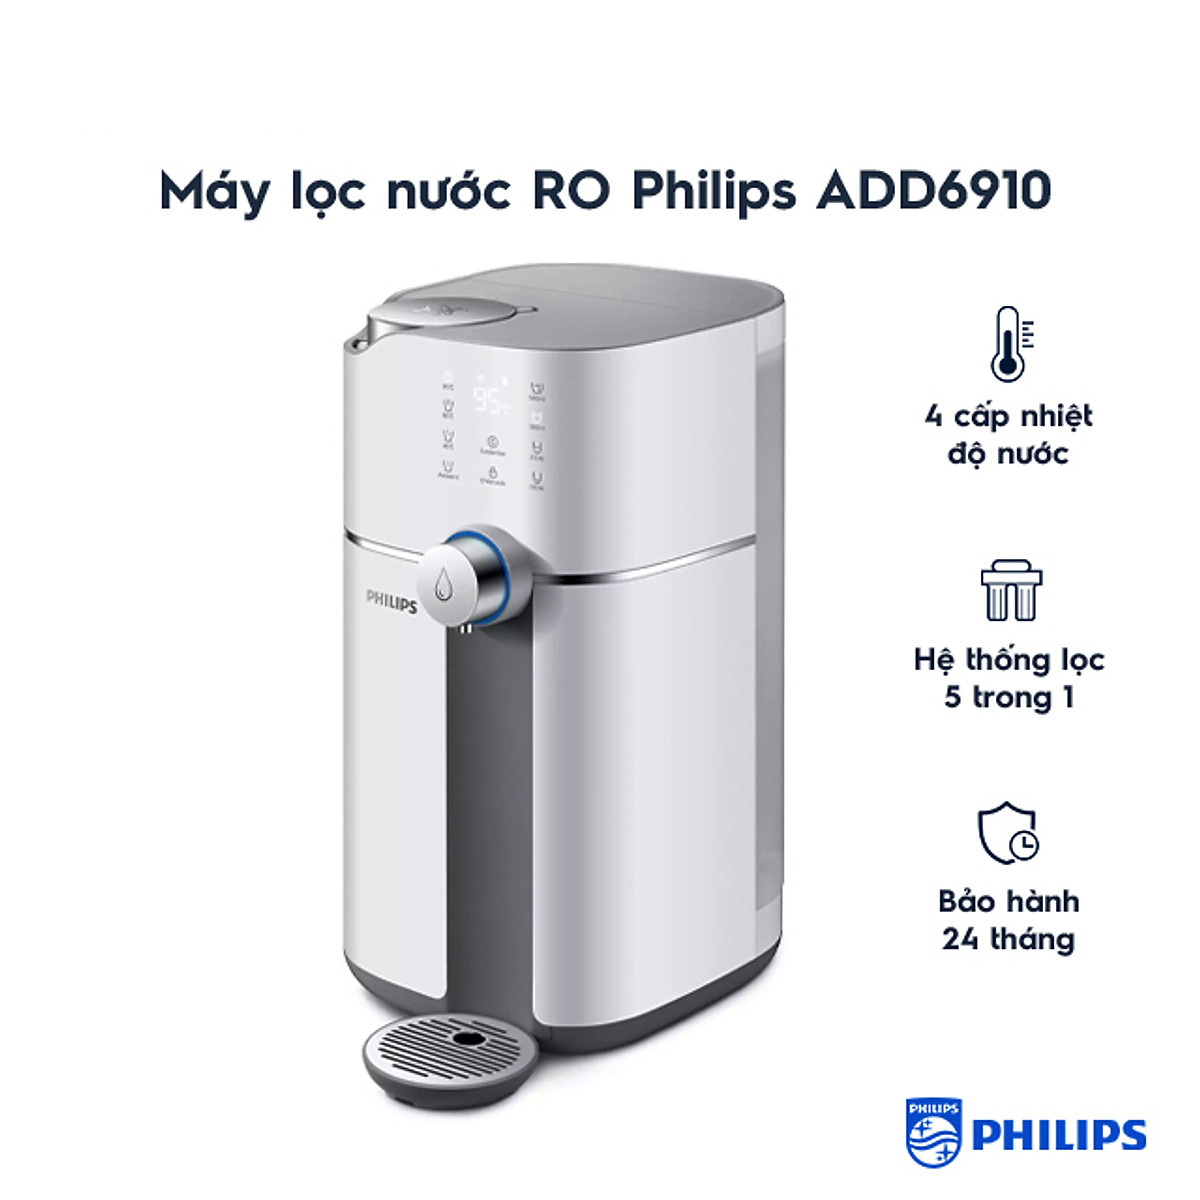 Máy lọc nước RO lõi lọc 5 thành phần và khử trùng UV Philips ADD6910